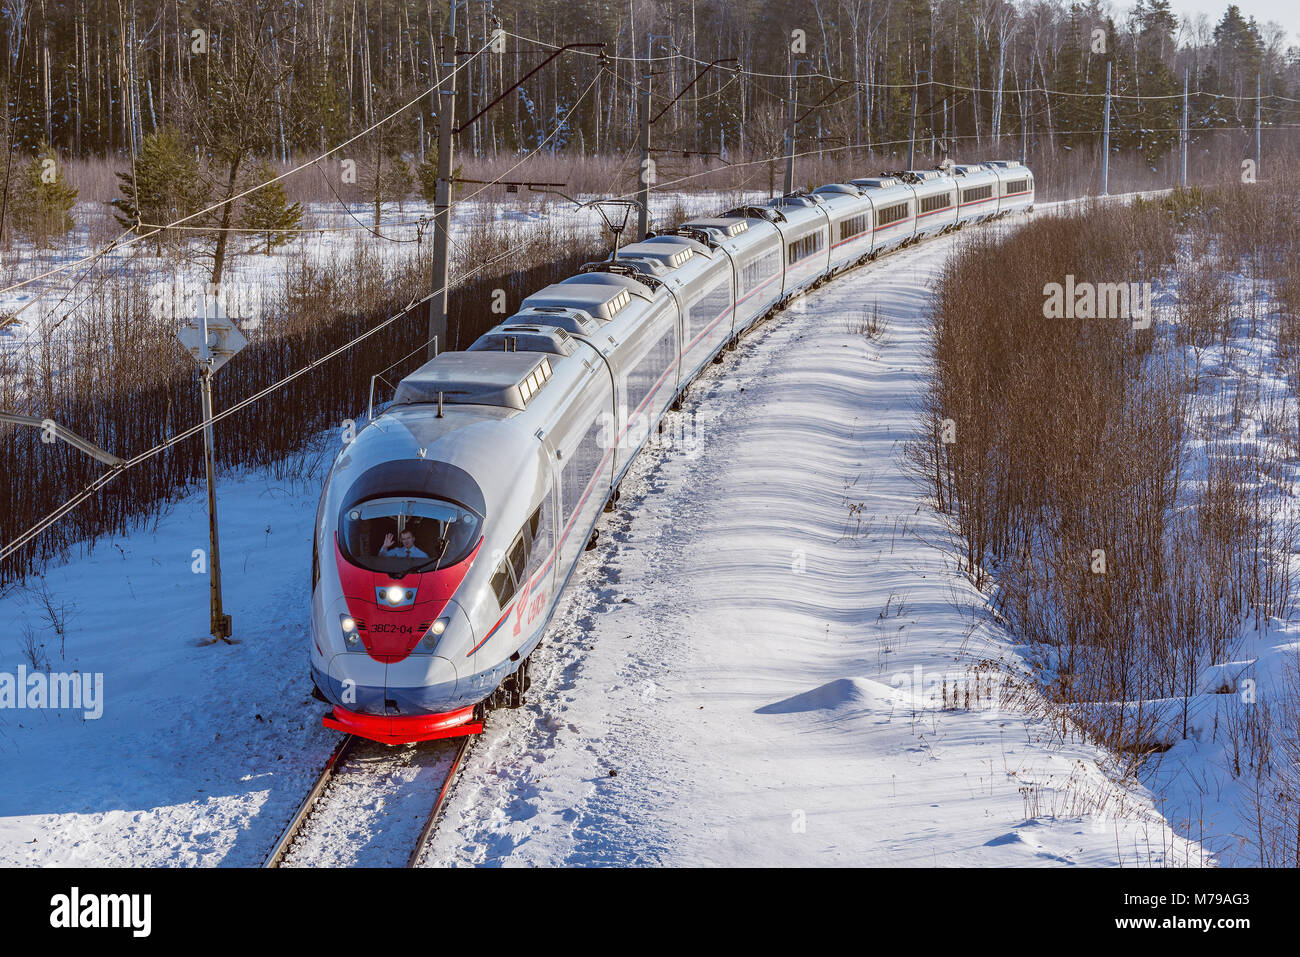 Fryazevo, Moskauer Gebiet, Russland - März 08, 2018: Moderne Hochgeschwindigkeitszug bewegt sich schnell im Winter morgen Zeit. Triebfahrzeugführer grüßt Fotograf. Stockfoto